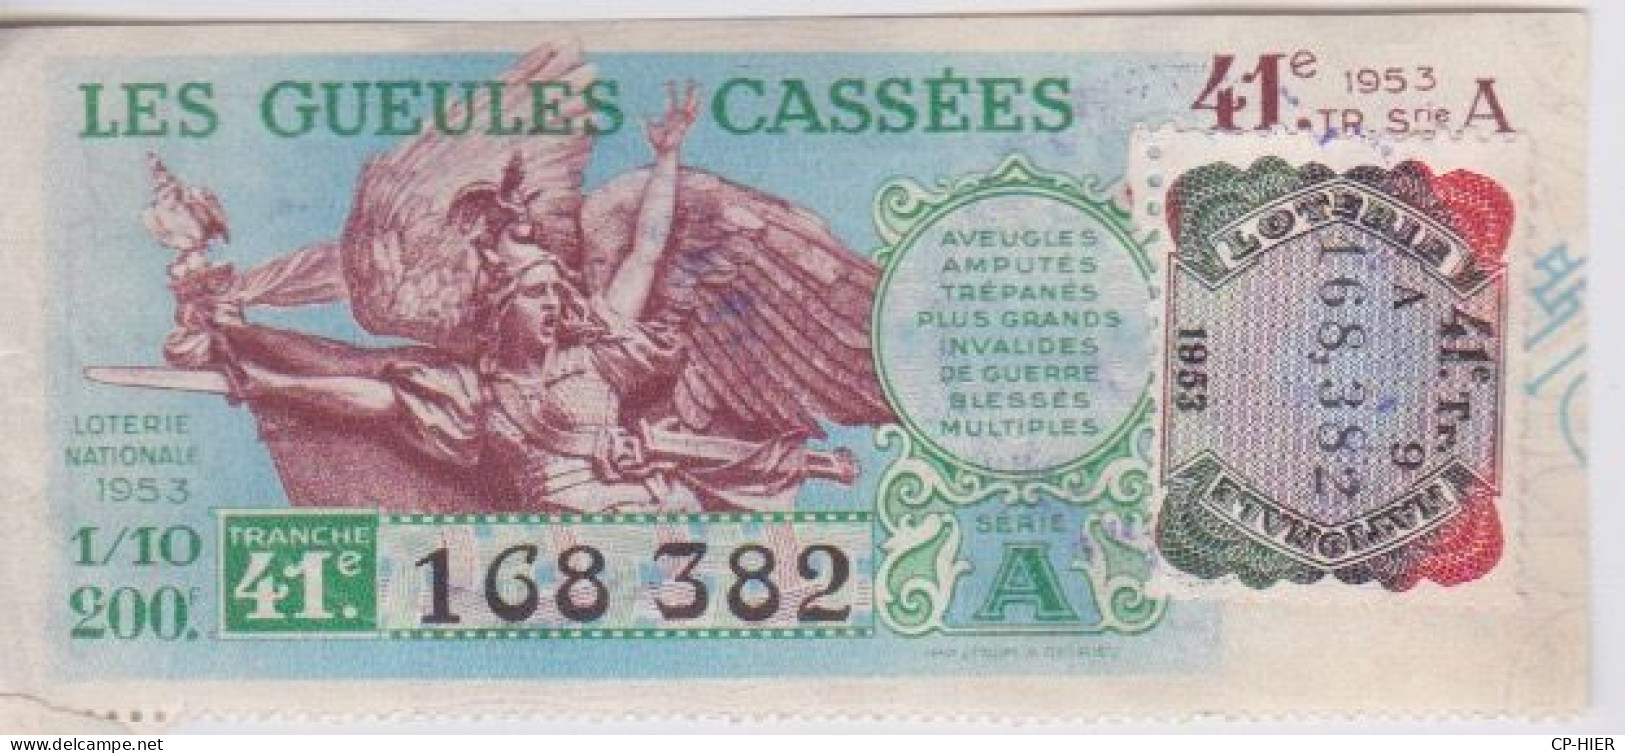 BILLET DE LOTERIE NATIONALE - LES GUEULES CASSEES - + VIGNETTE  1953 + CACHET AU DOS - Lotterielose